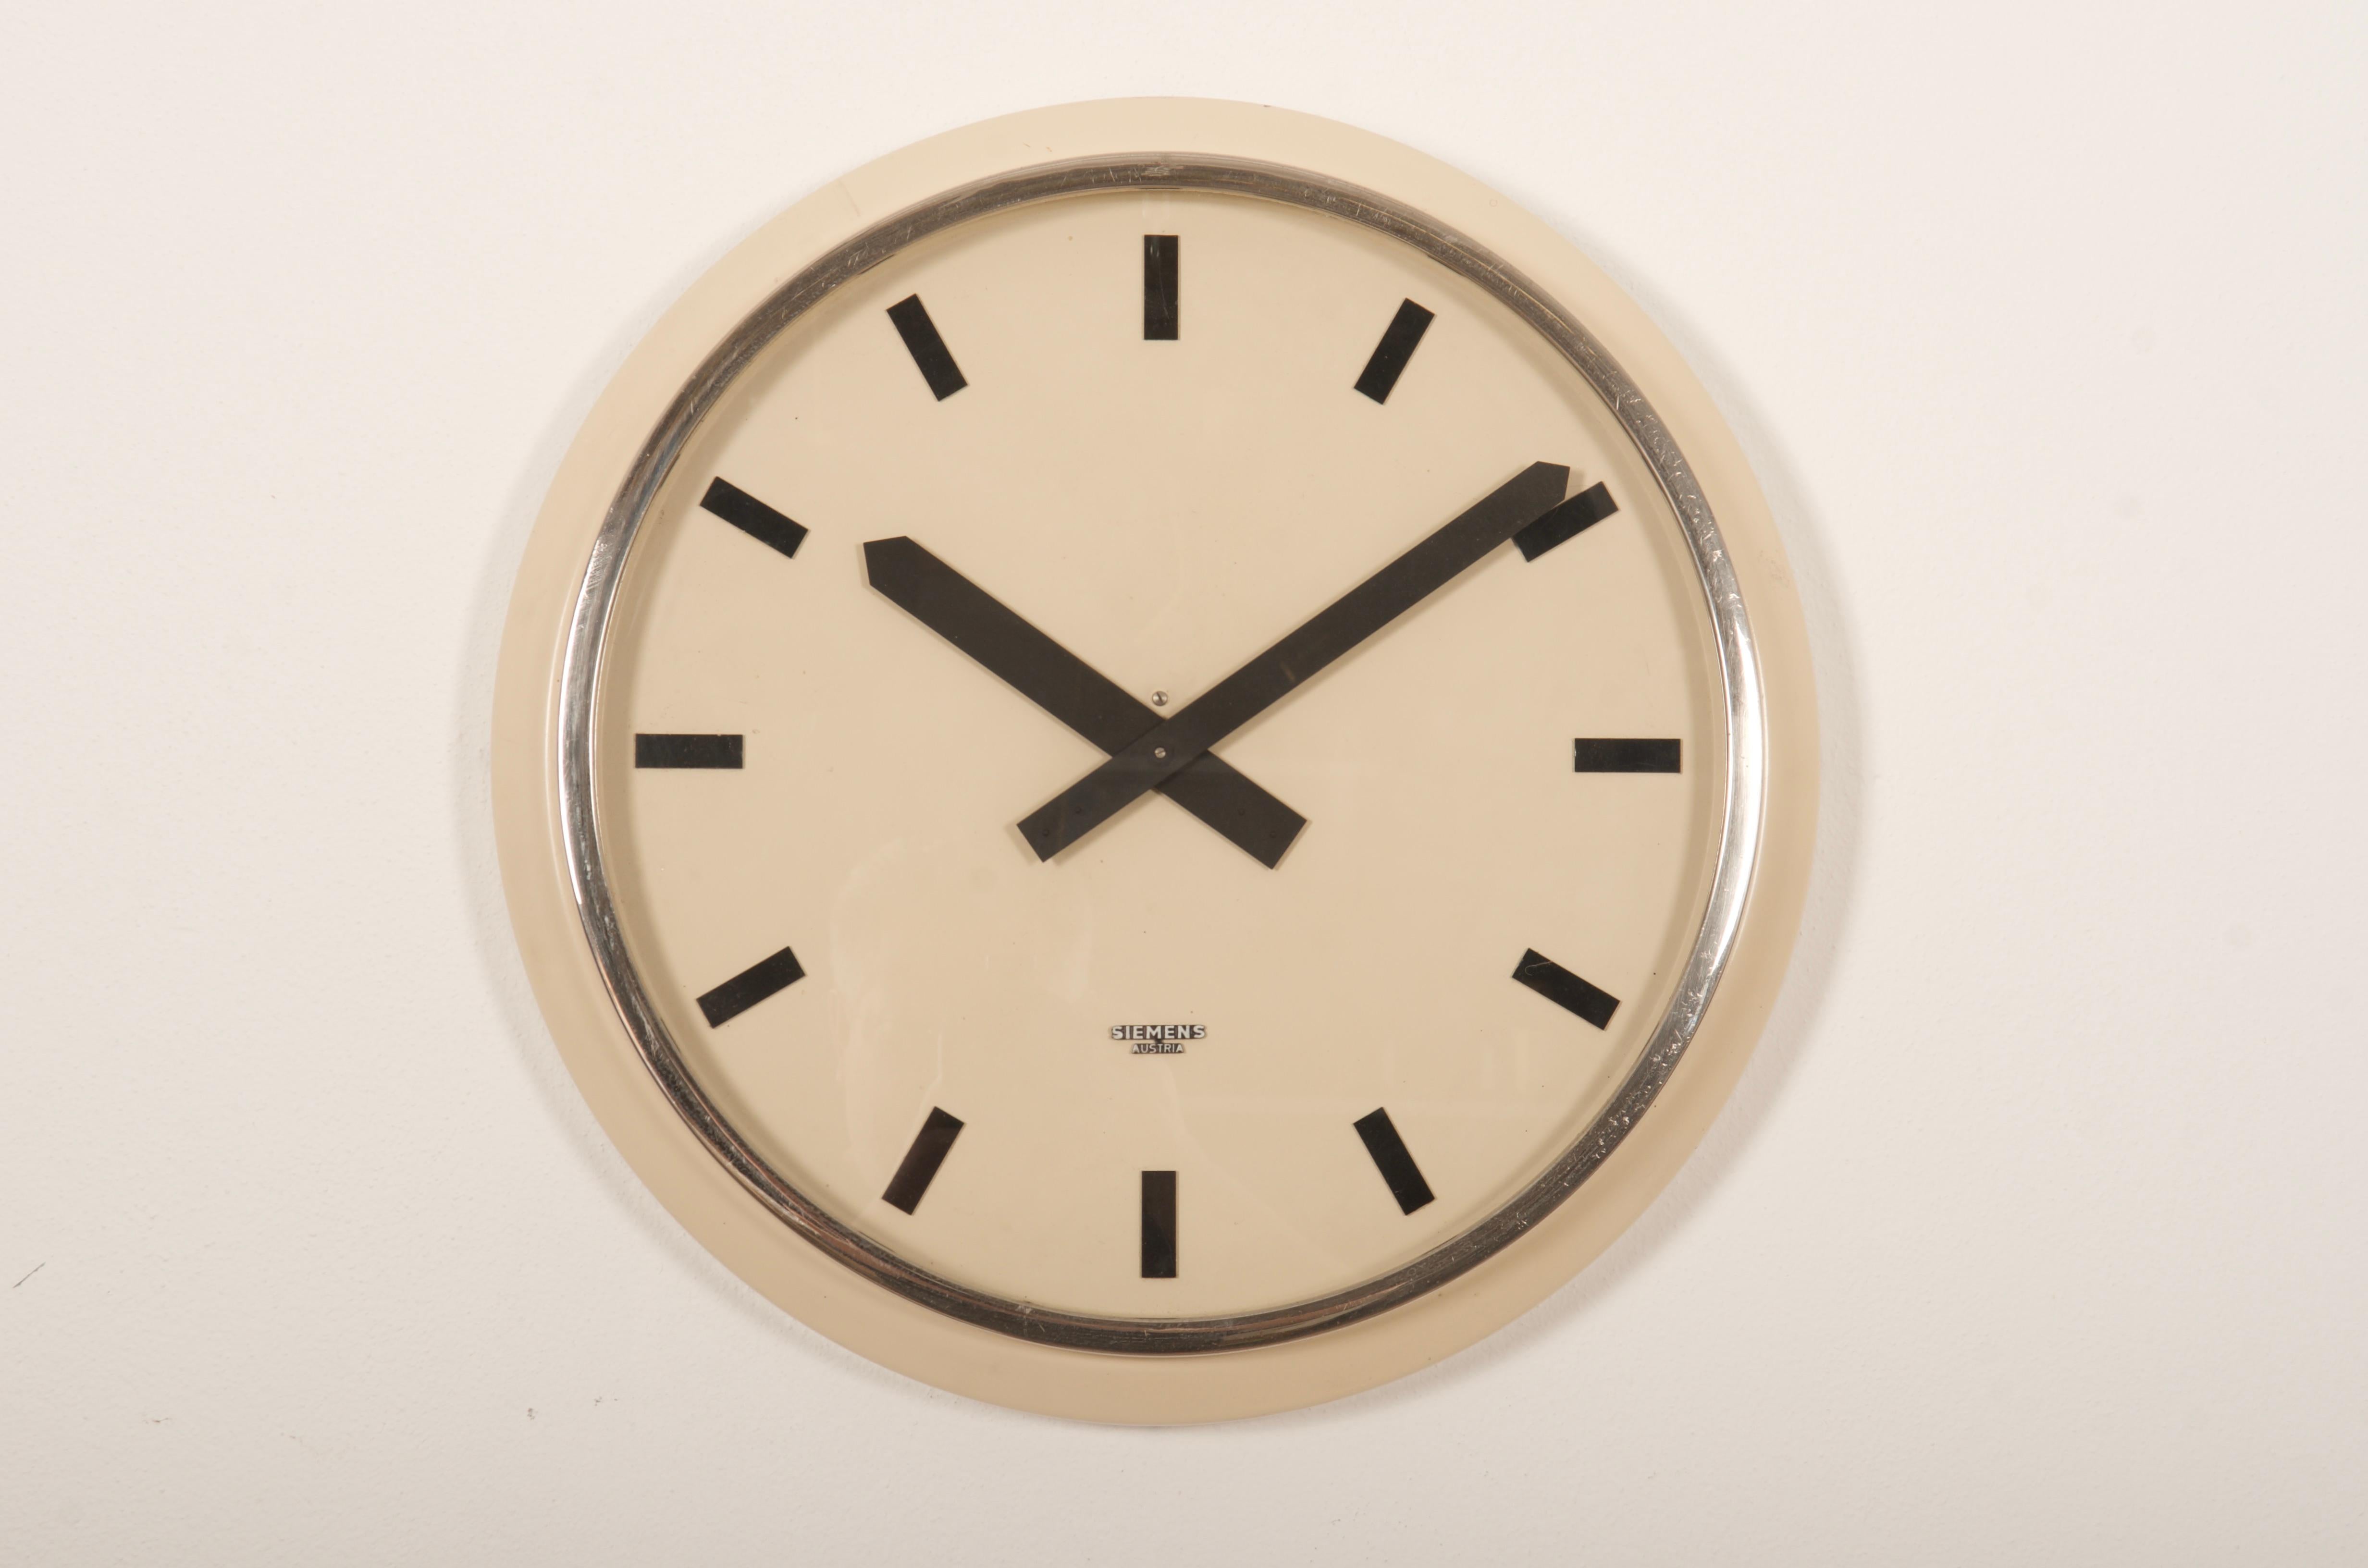 Acier peint avec index et aiguilles chromés. Fabriqué par Siemens en Autriche dans les années 1960. 
Anciennement une horloge d'esclave, elle est maintenant équipée d'un mouvement moderne à quartz avec une batterie.